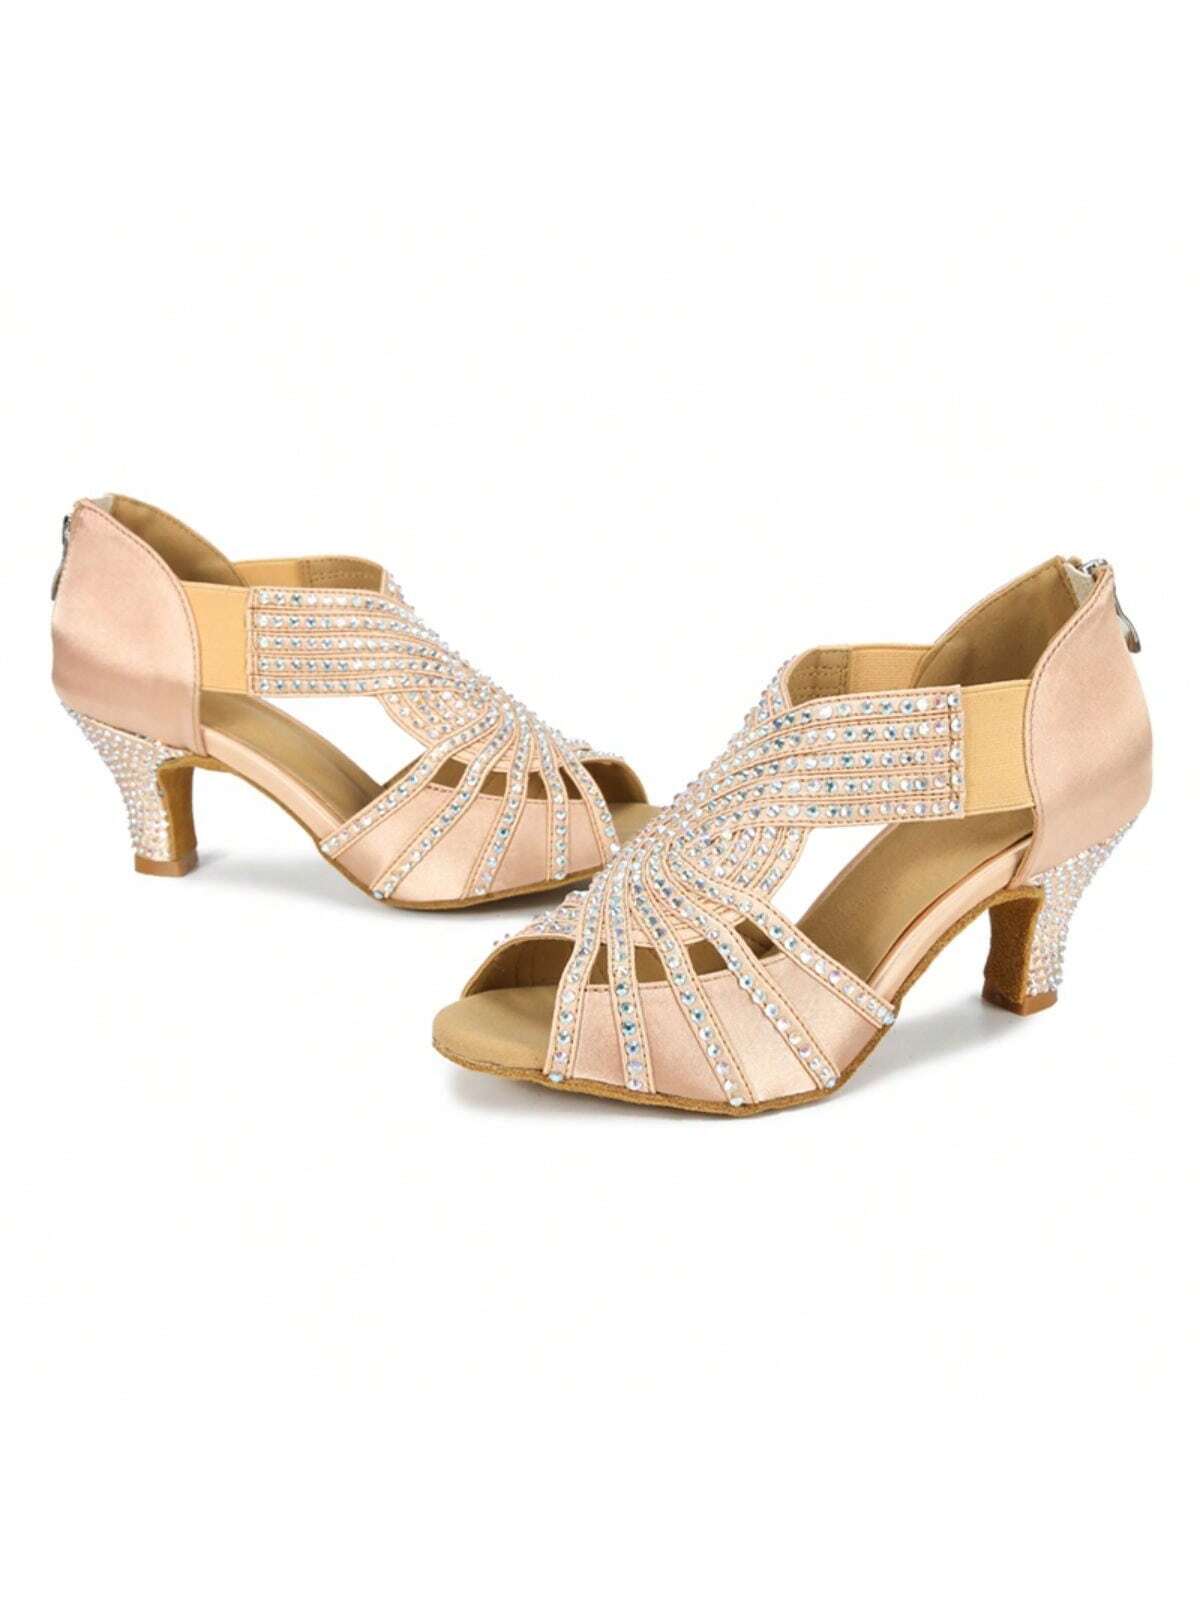 1 Pair Apricot Diamond-studded Satin Fashionable Comfortable Mid-heel Latin Dance Tango Dance Social Dance Shoes-Apricot-5